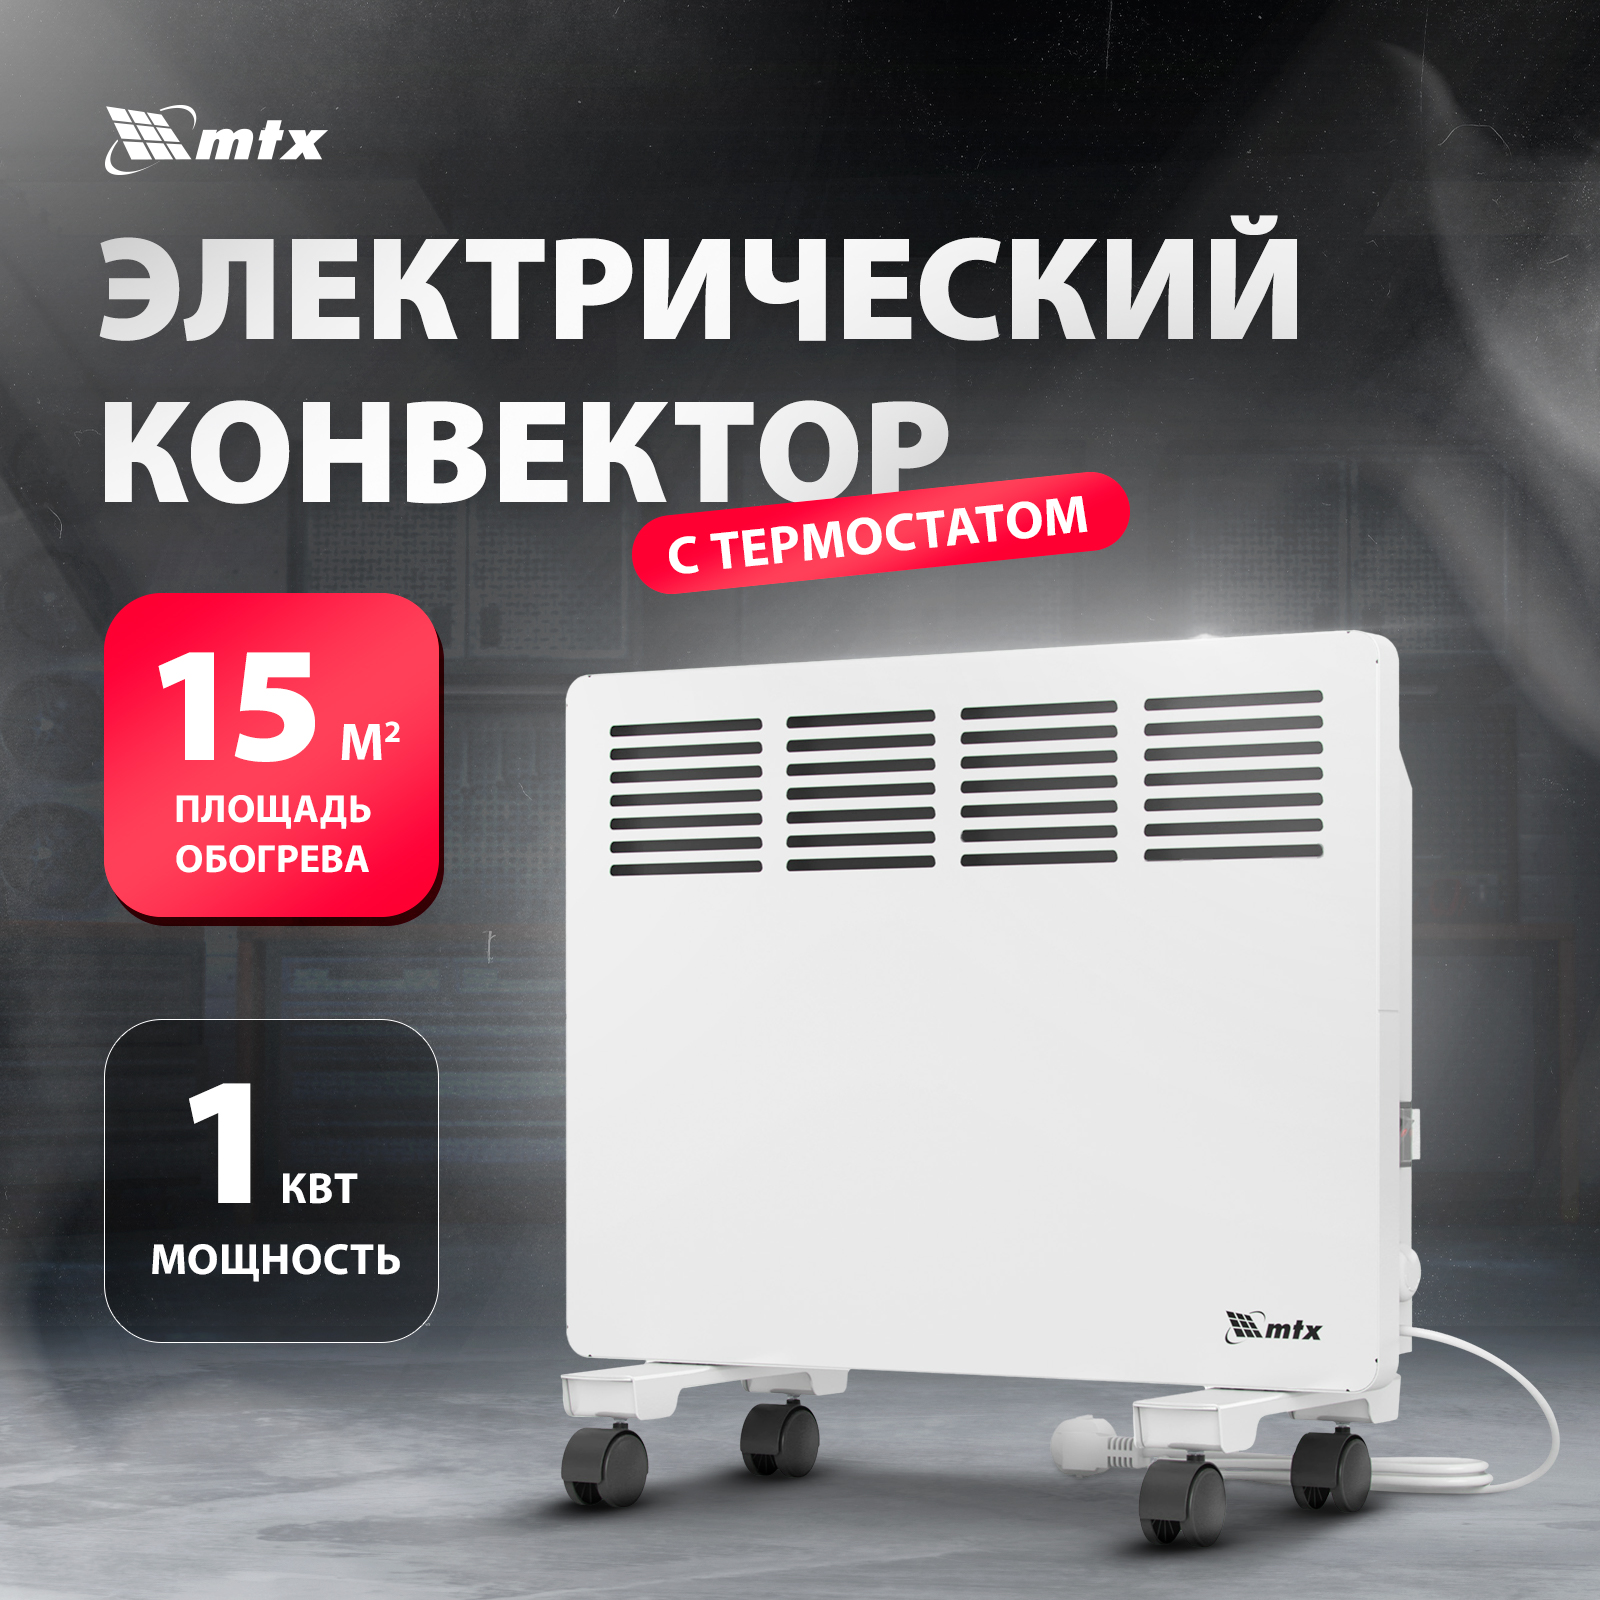 Конвектор MTX КМ-1000.1 White, купить в Москве, цены в интернет-магазинах на Мегамаркет